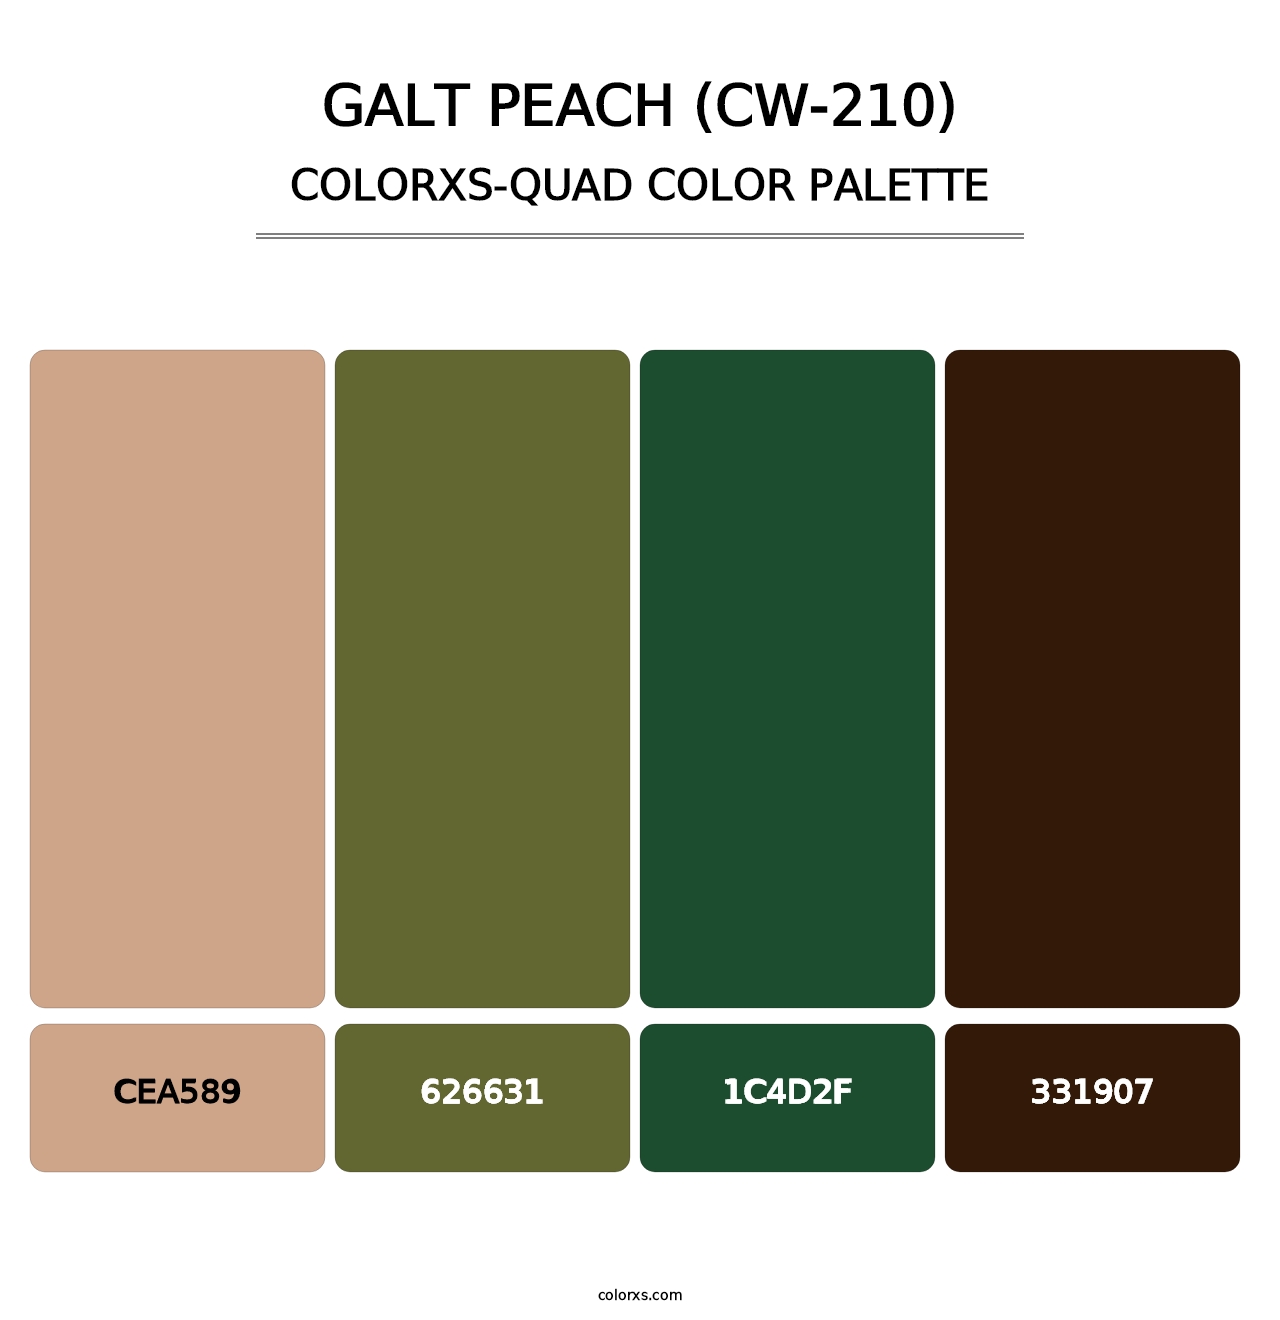 Galt Peach (CW-210) - Colorxs Quad Palette